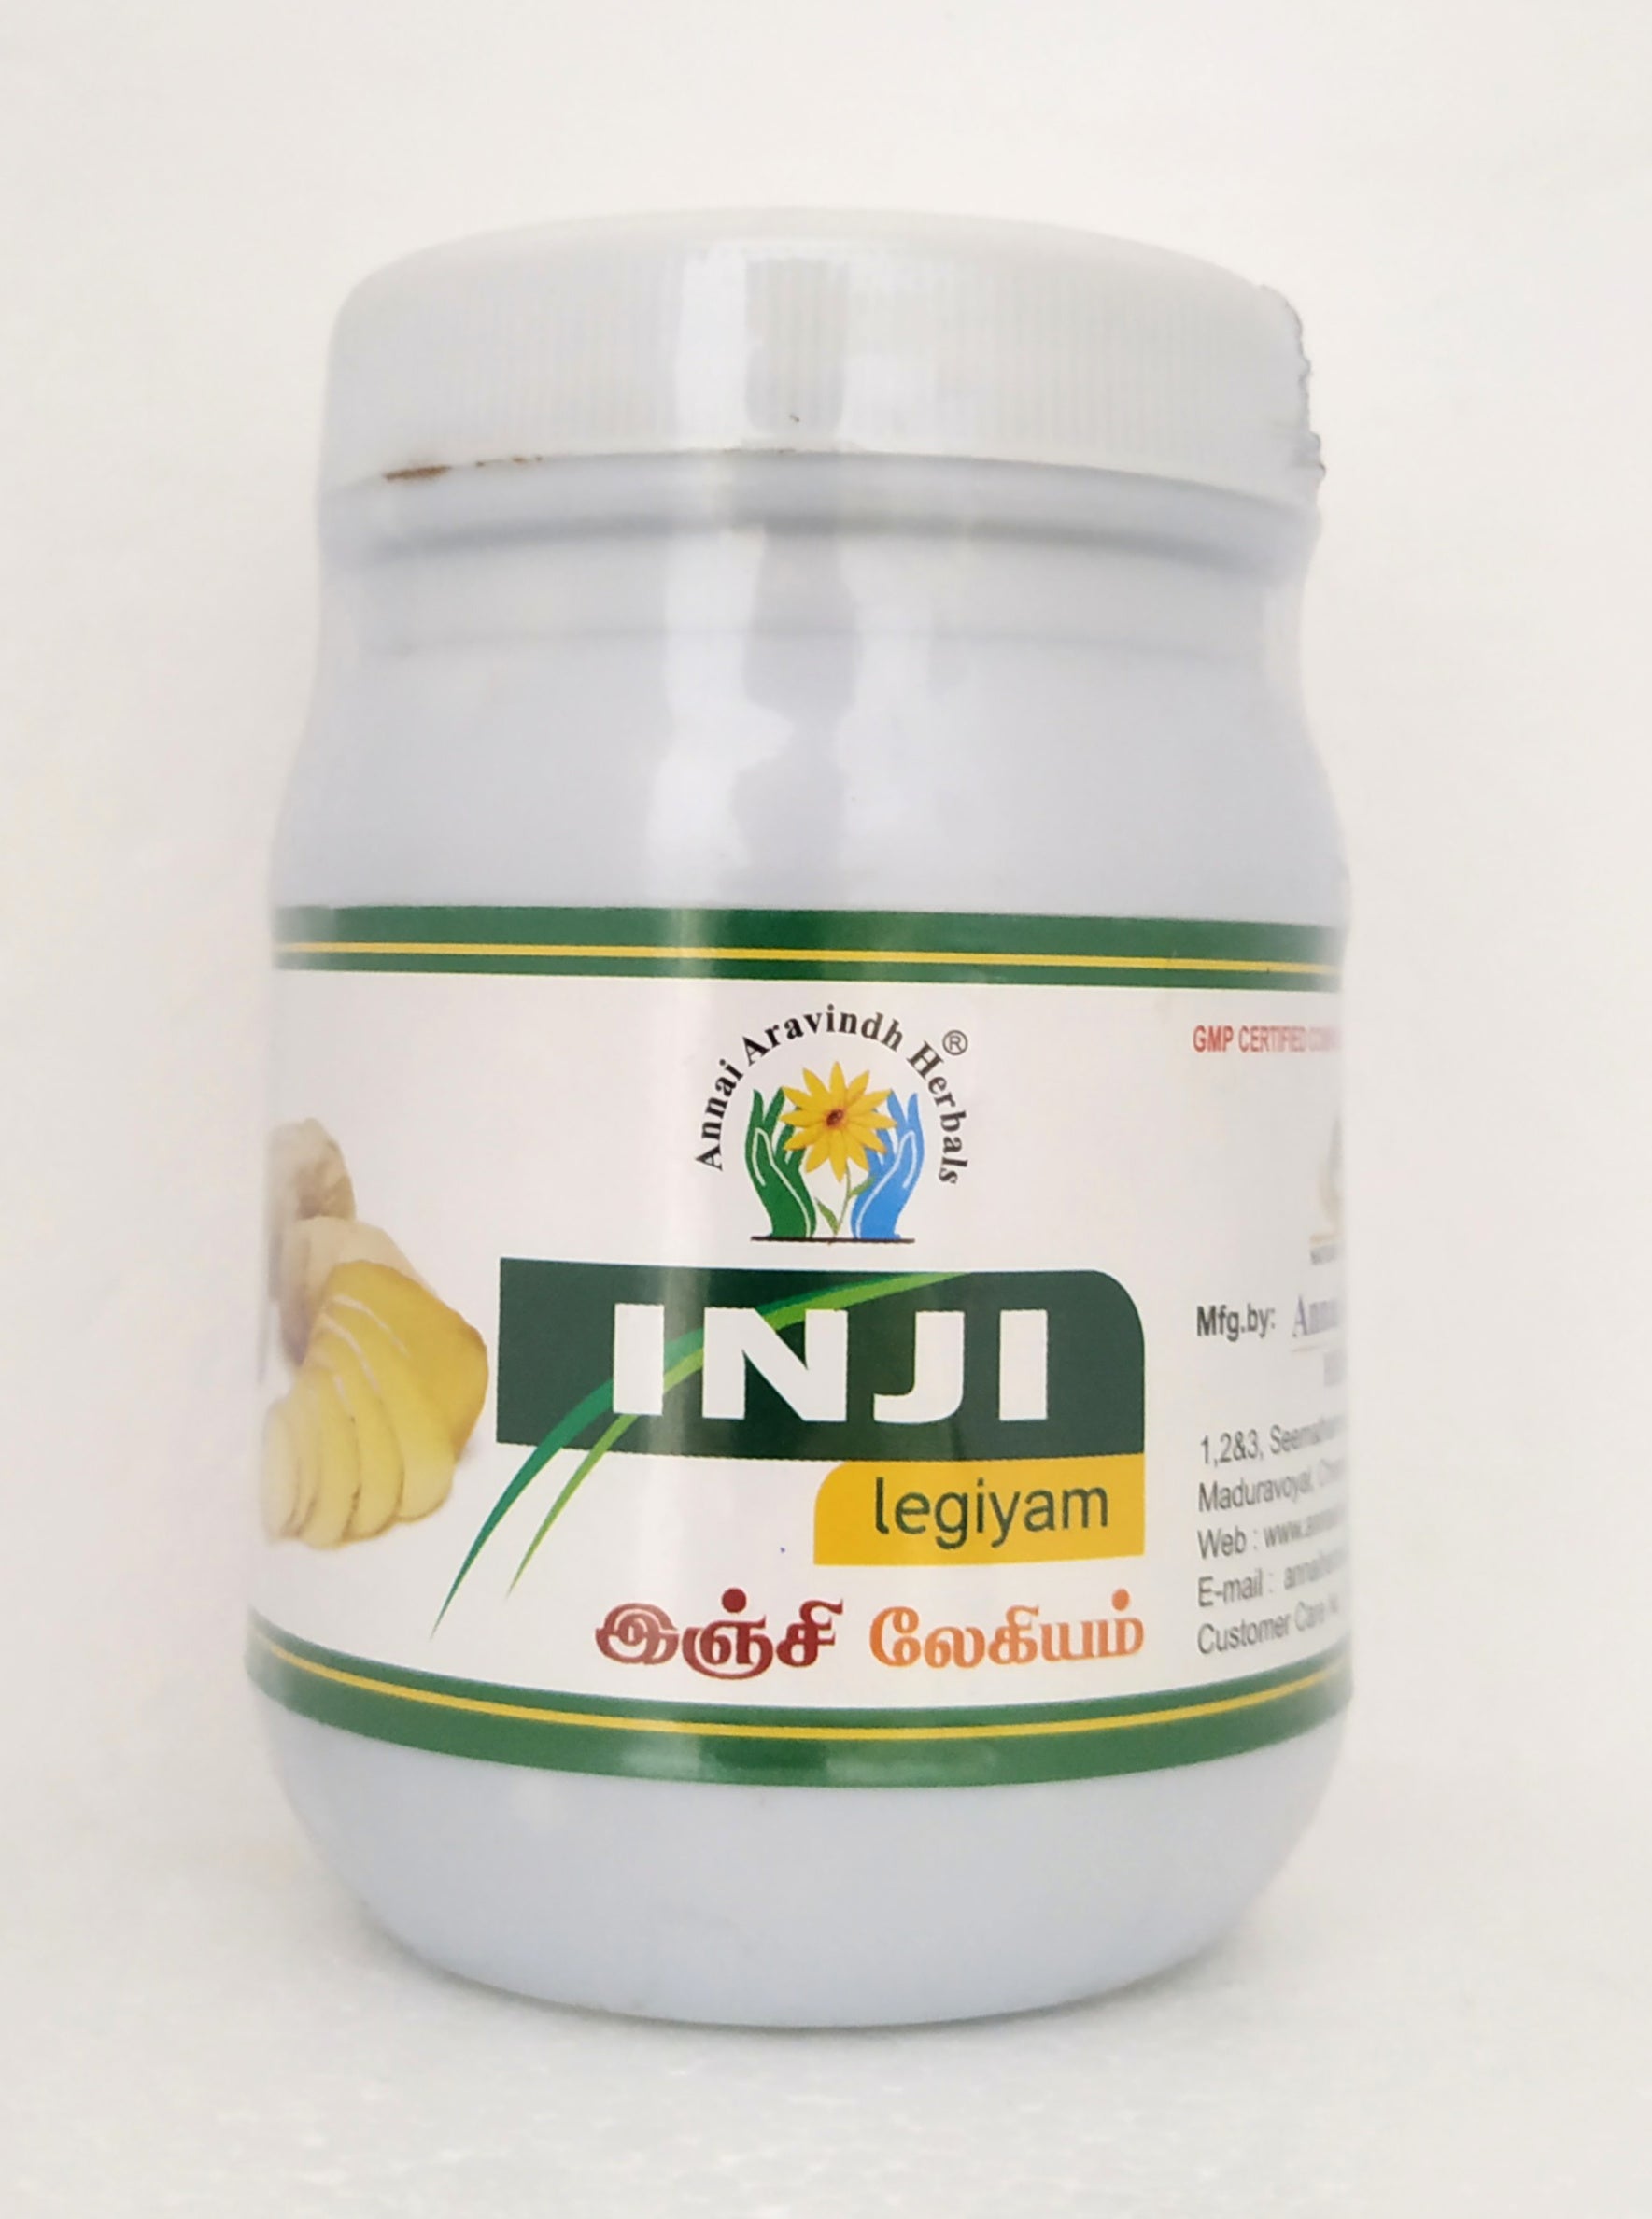 Shop Inji legiyam 250gm at price 240.00 from Annai Aravindh Online - Ayush Care